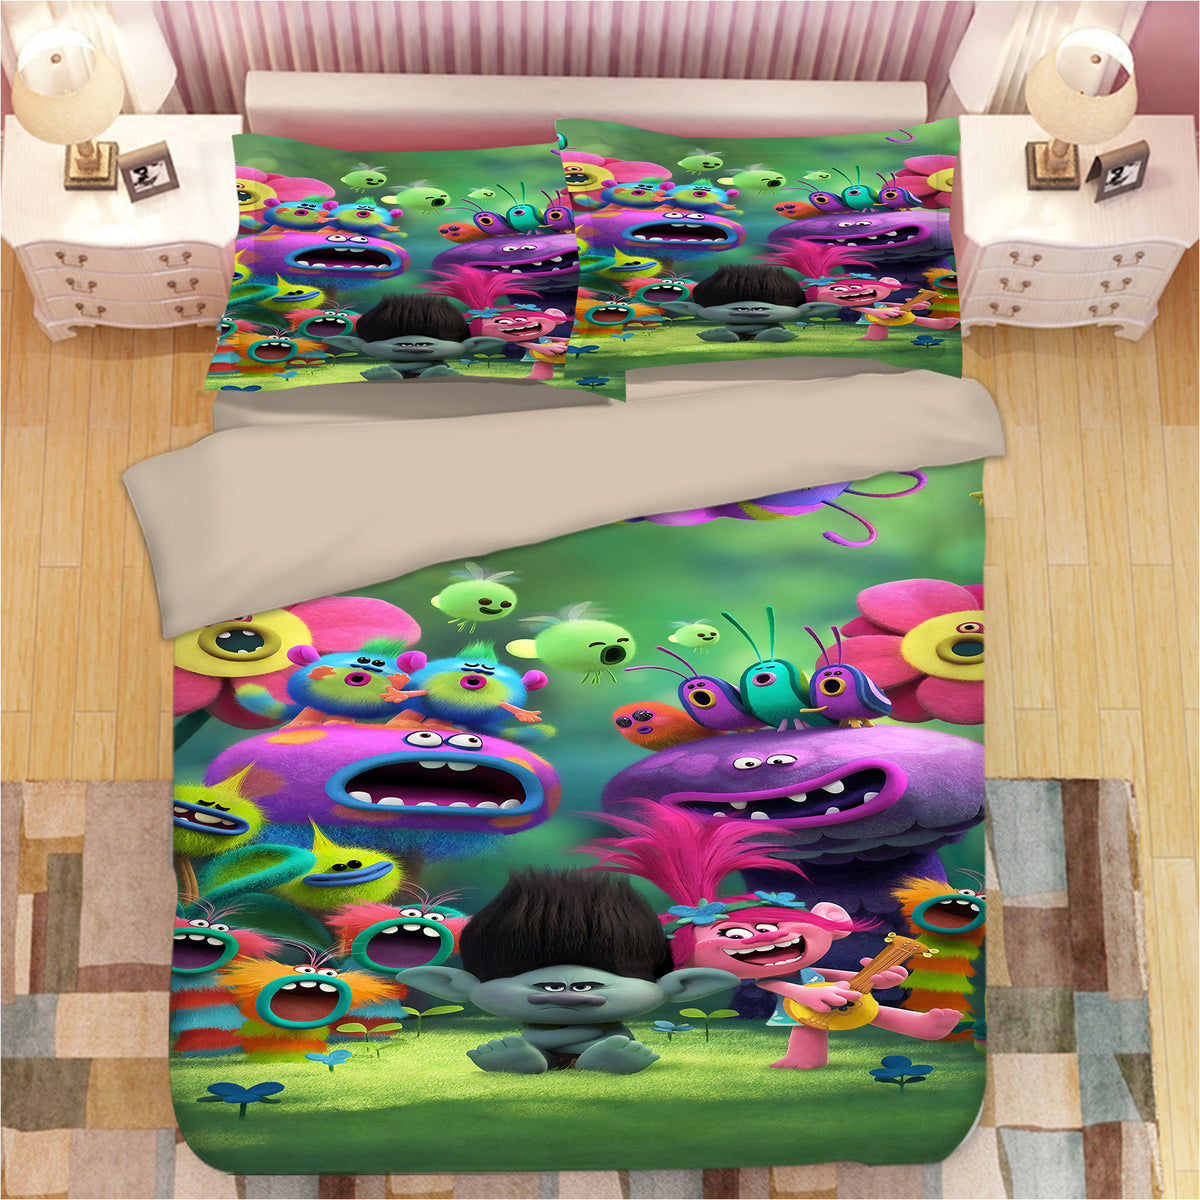 Trolls Poppy #13 Duvet Cover Quilt Cover Pillowcase Bedding Set Bed Linen Home Bedroom Decor